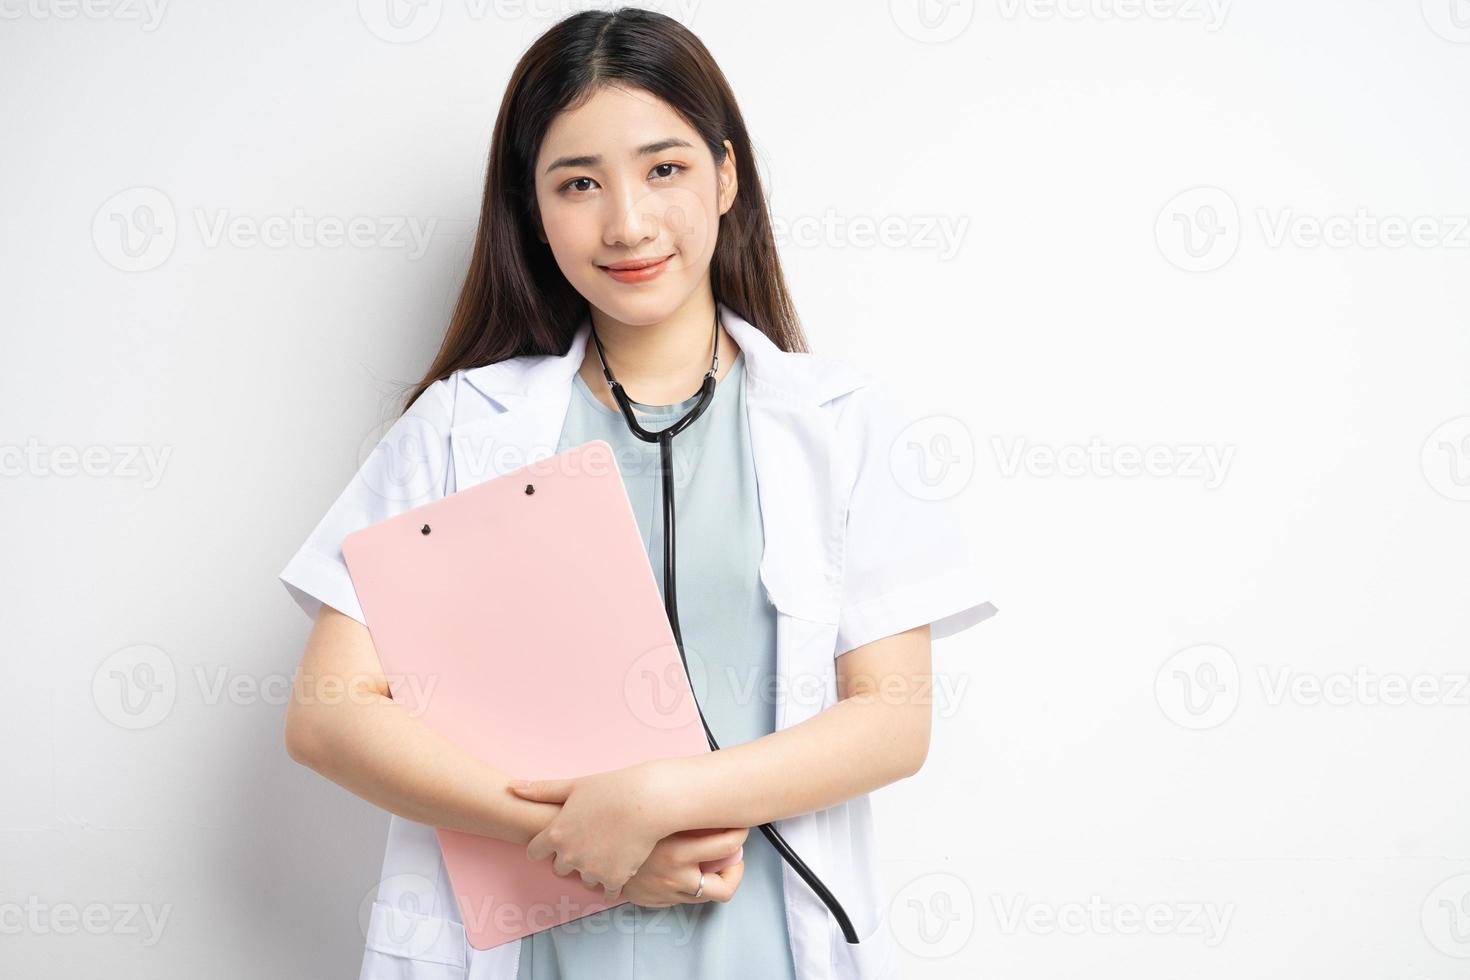 kvinnlig läkare som innehar dokument foto